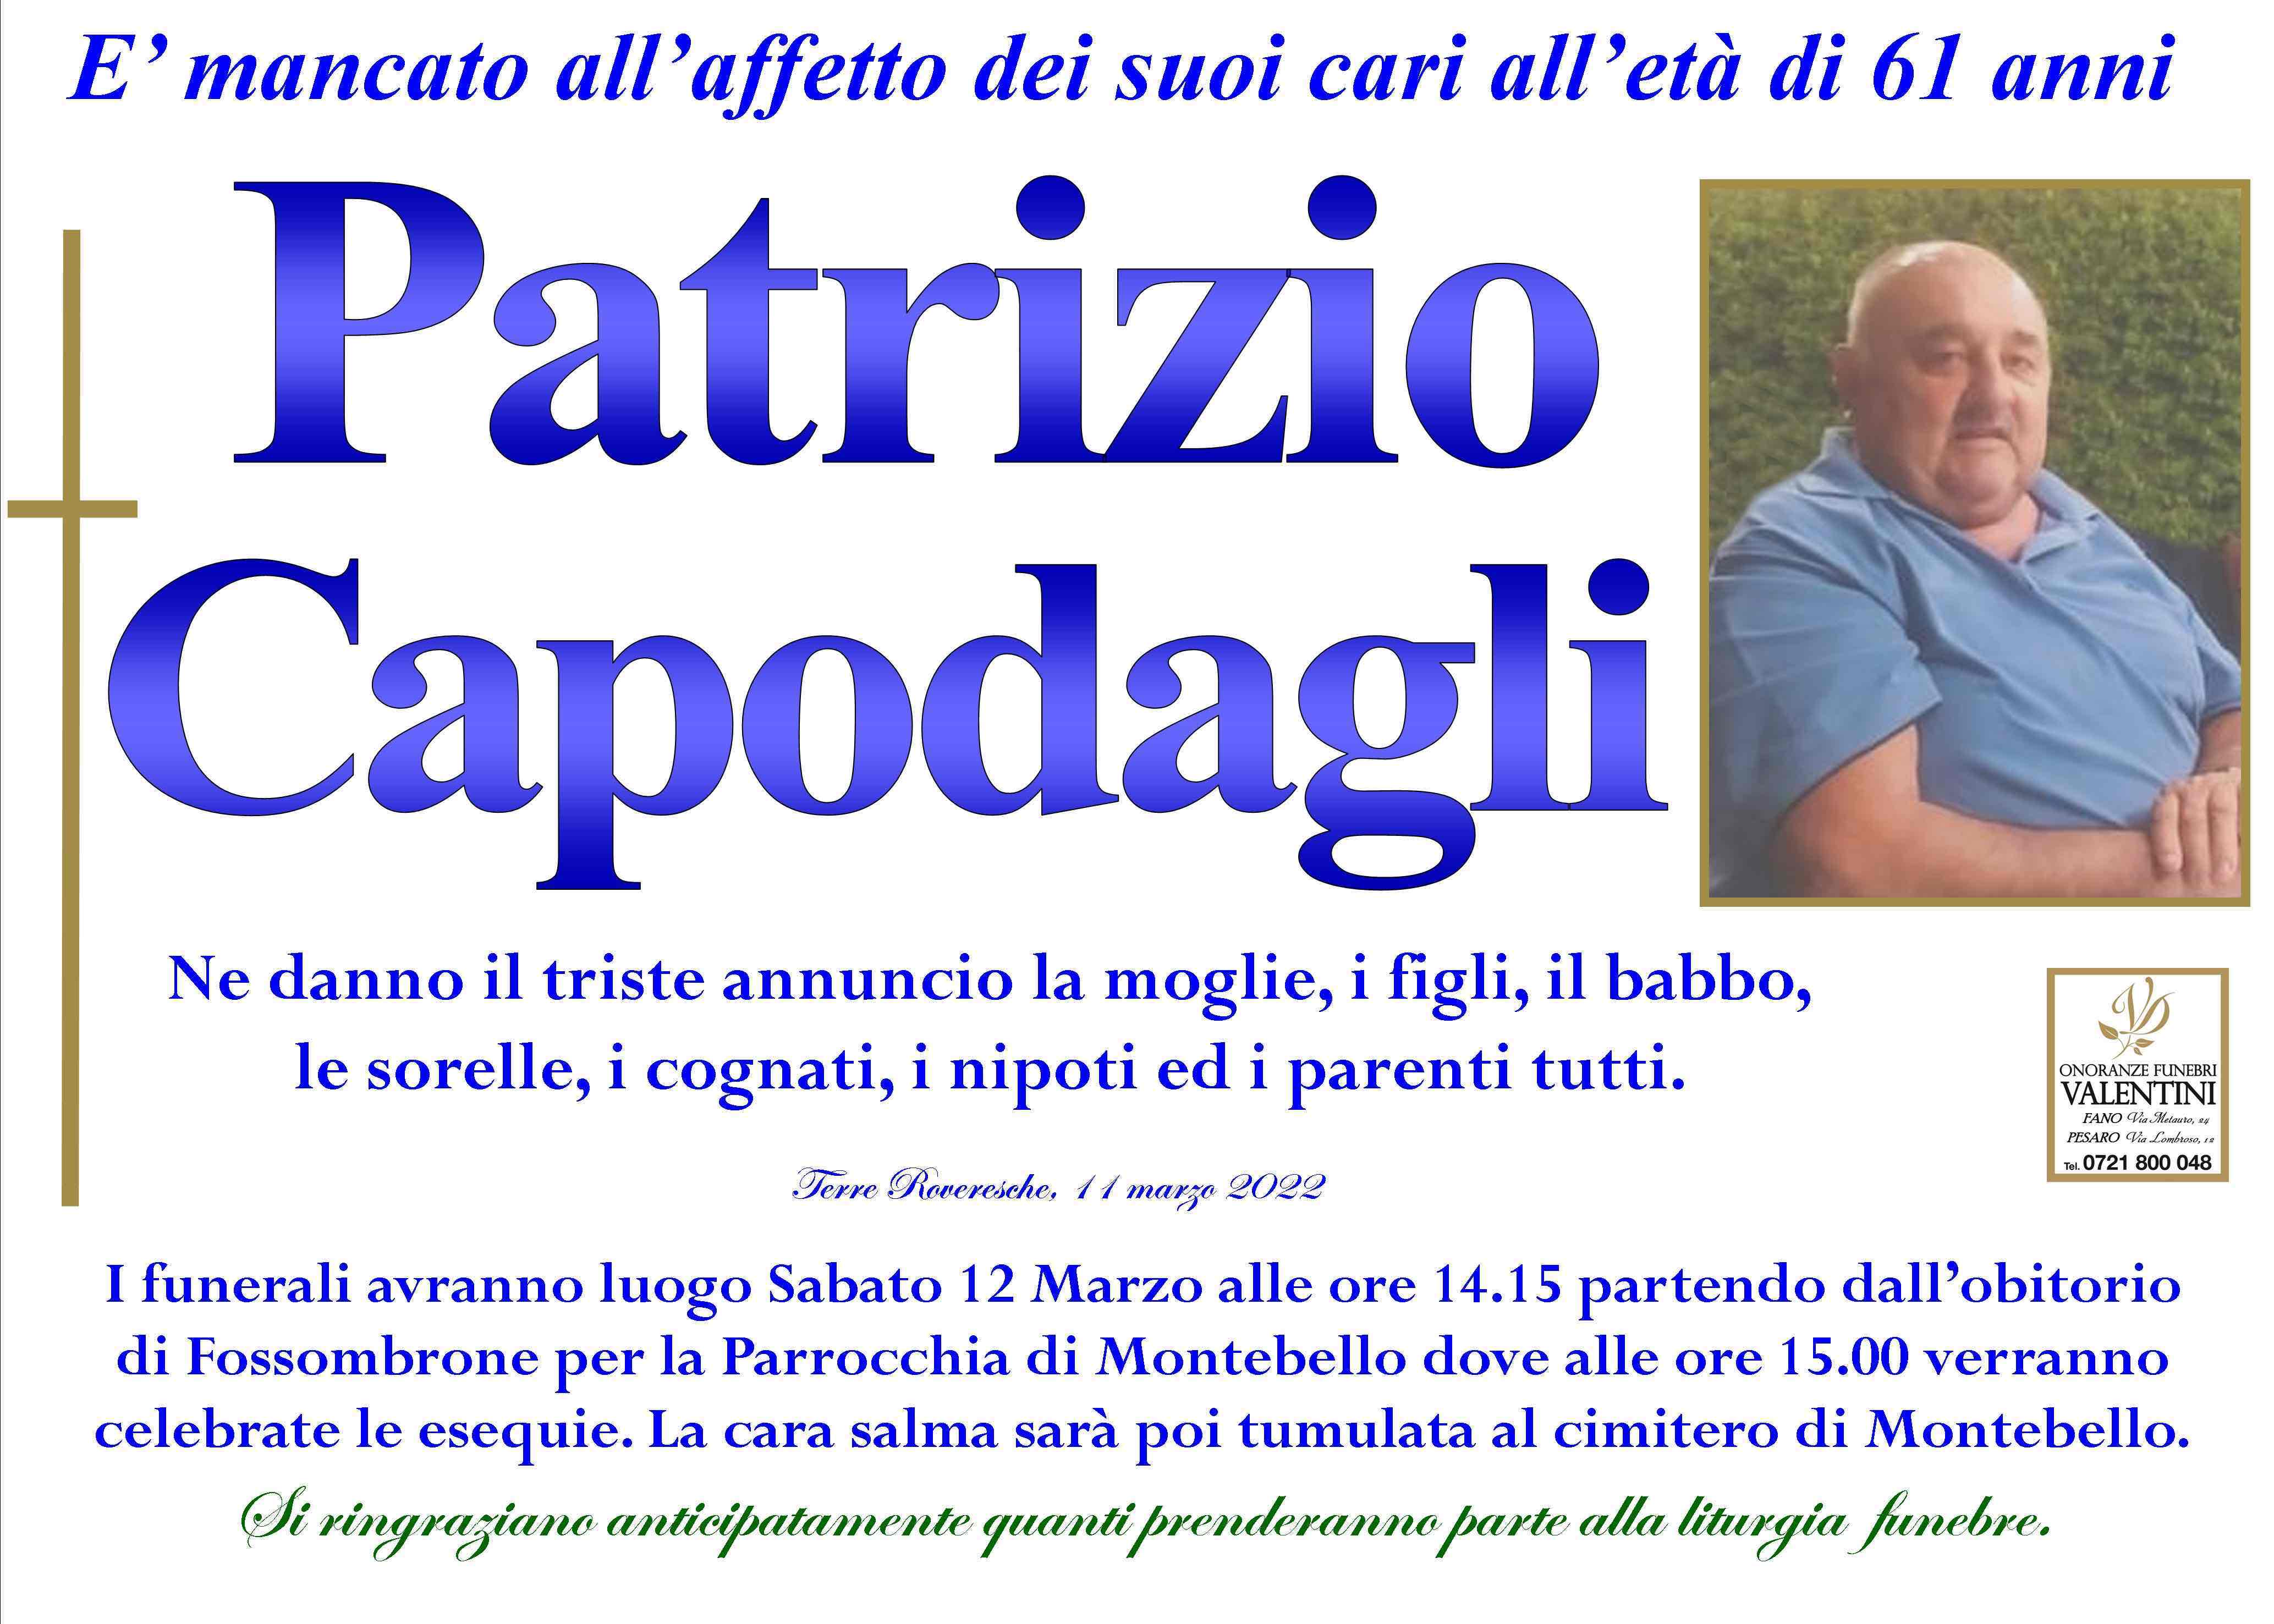 Patrizio Capodagli